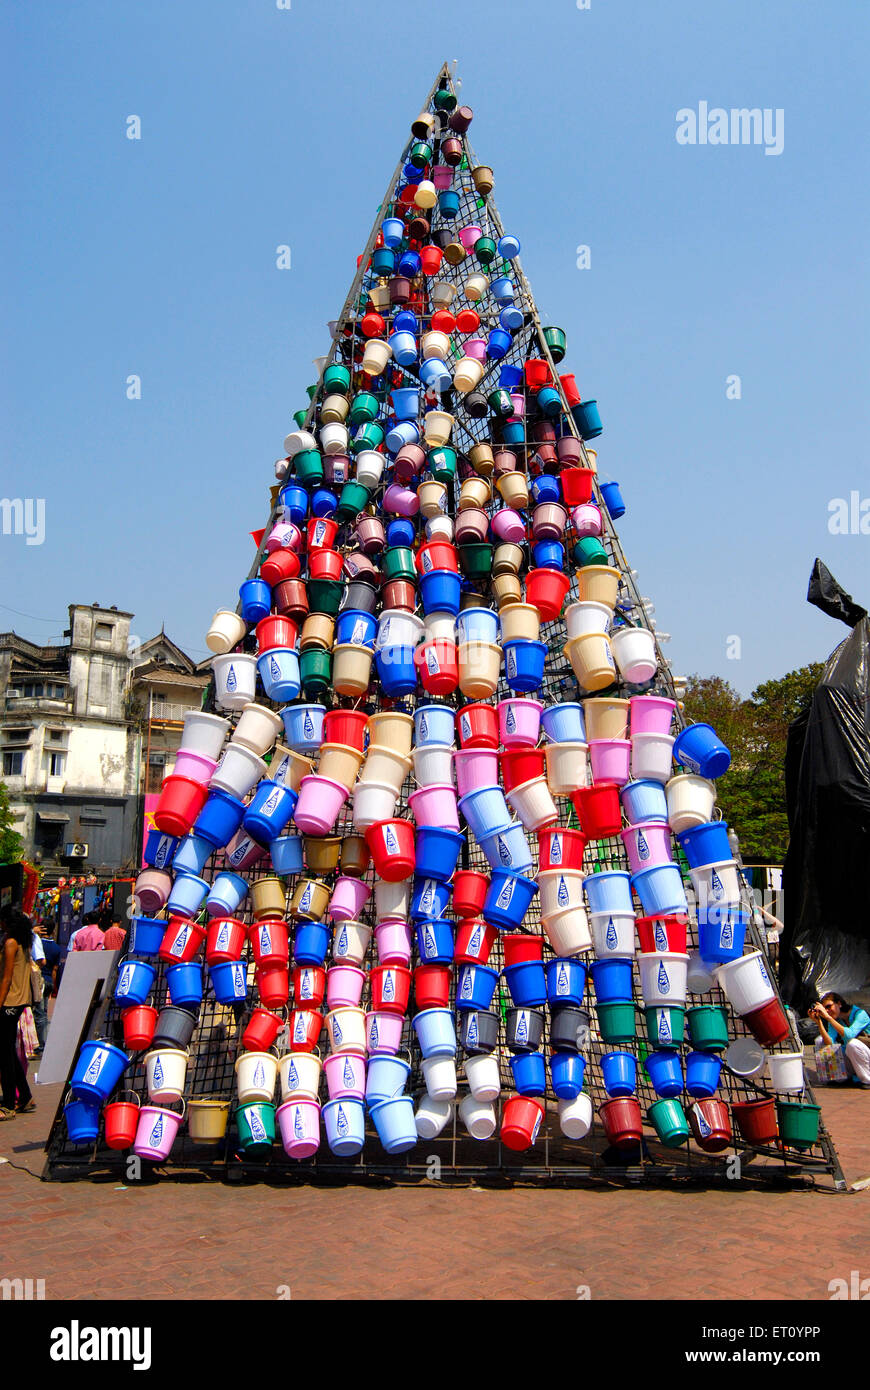 Plastic buckets sculpture, Kala Ghoda, art festival, Bombay, Mumbai, Maharashtra, India Stock Photo